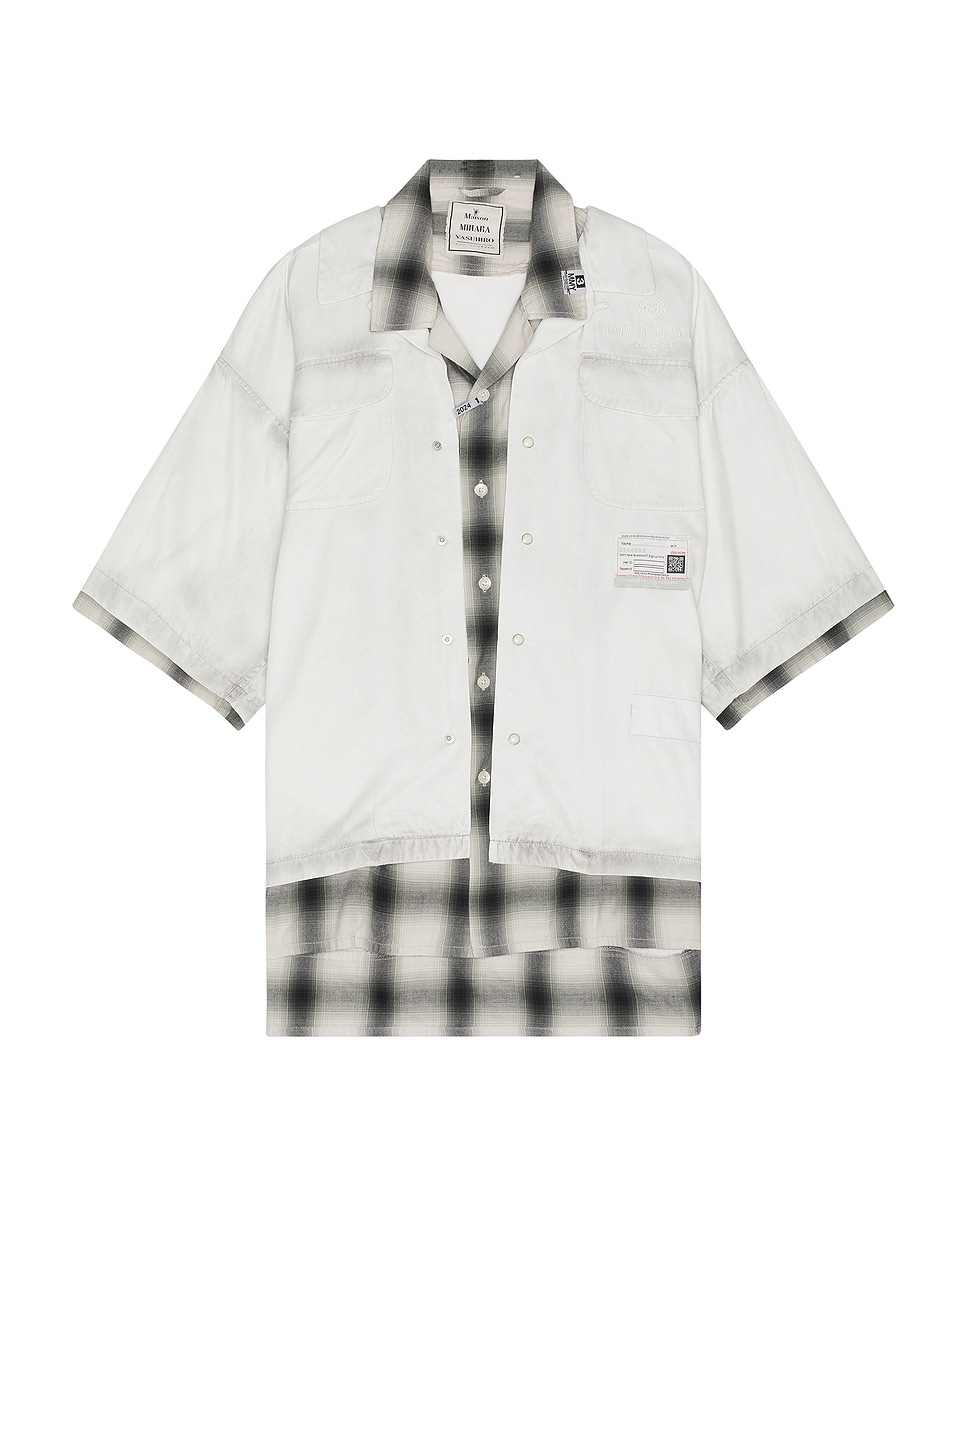 Image 1 of Maison MIHARA YASUHIRO Rc Twill Double Layered Shirt in Light Gray